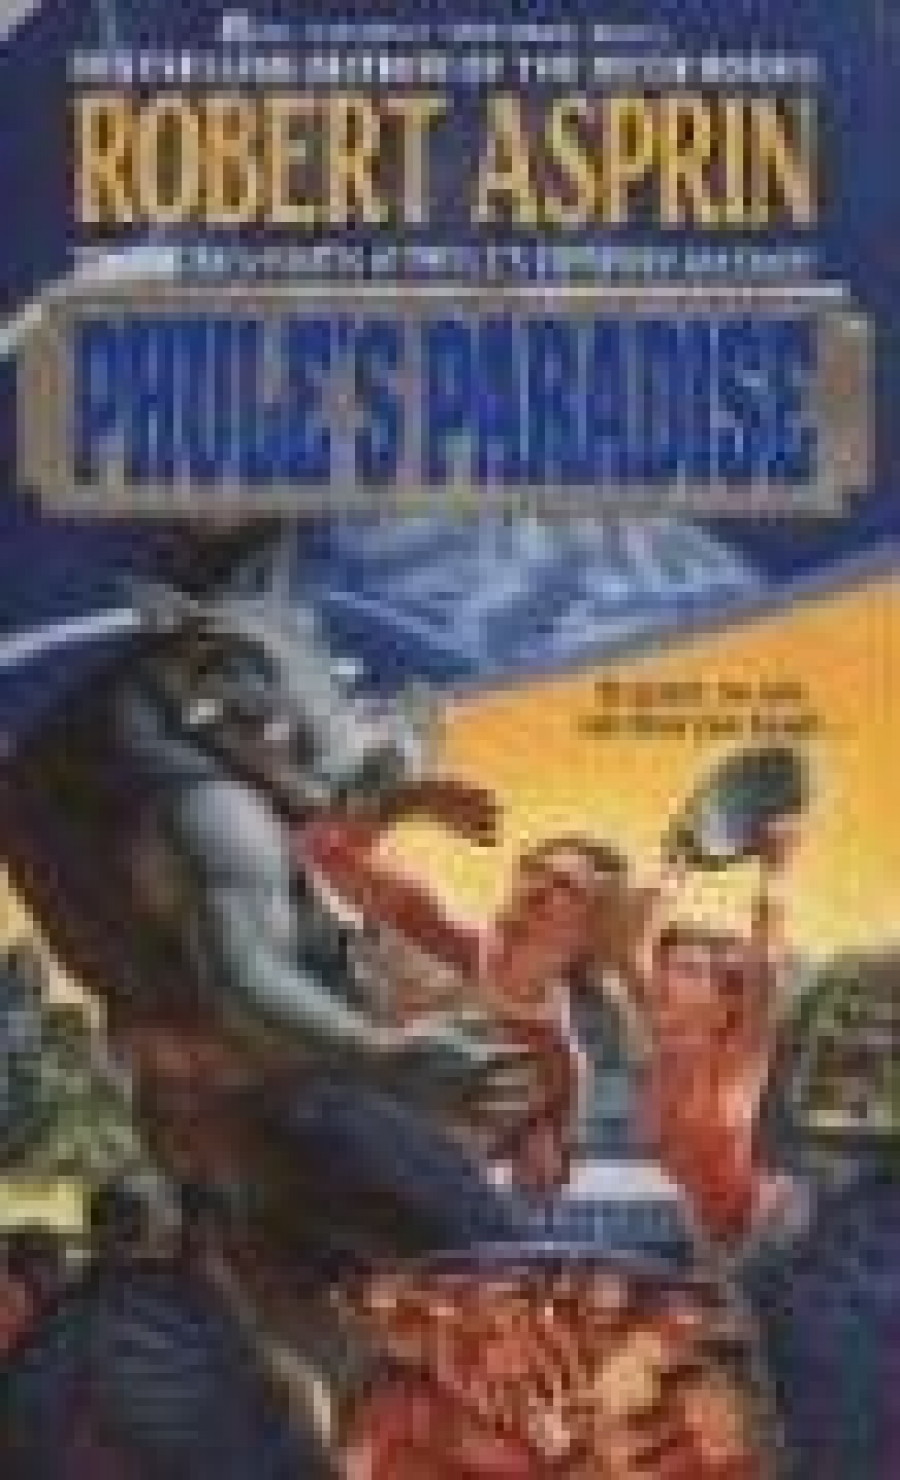 Robert A. Phule's Paradise 